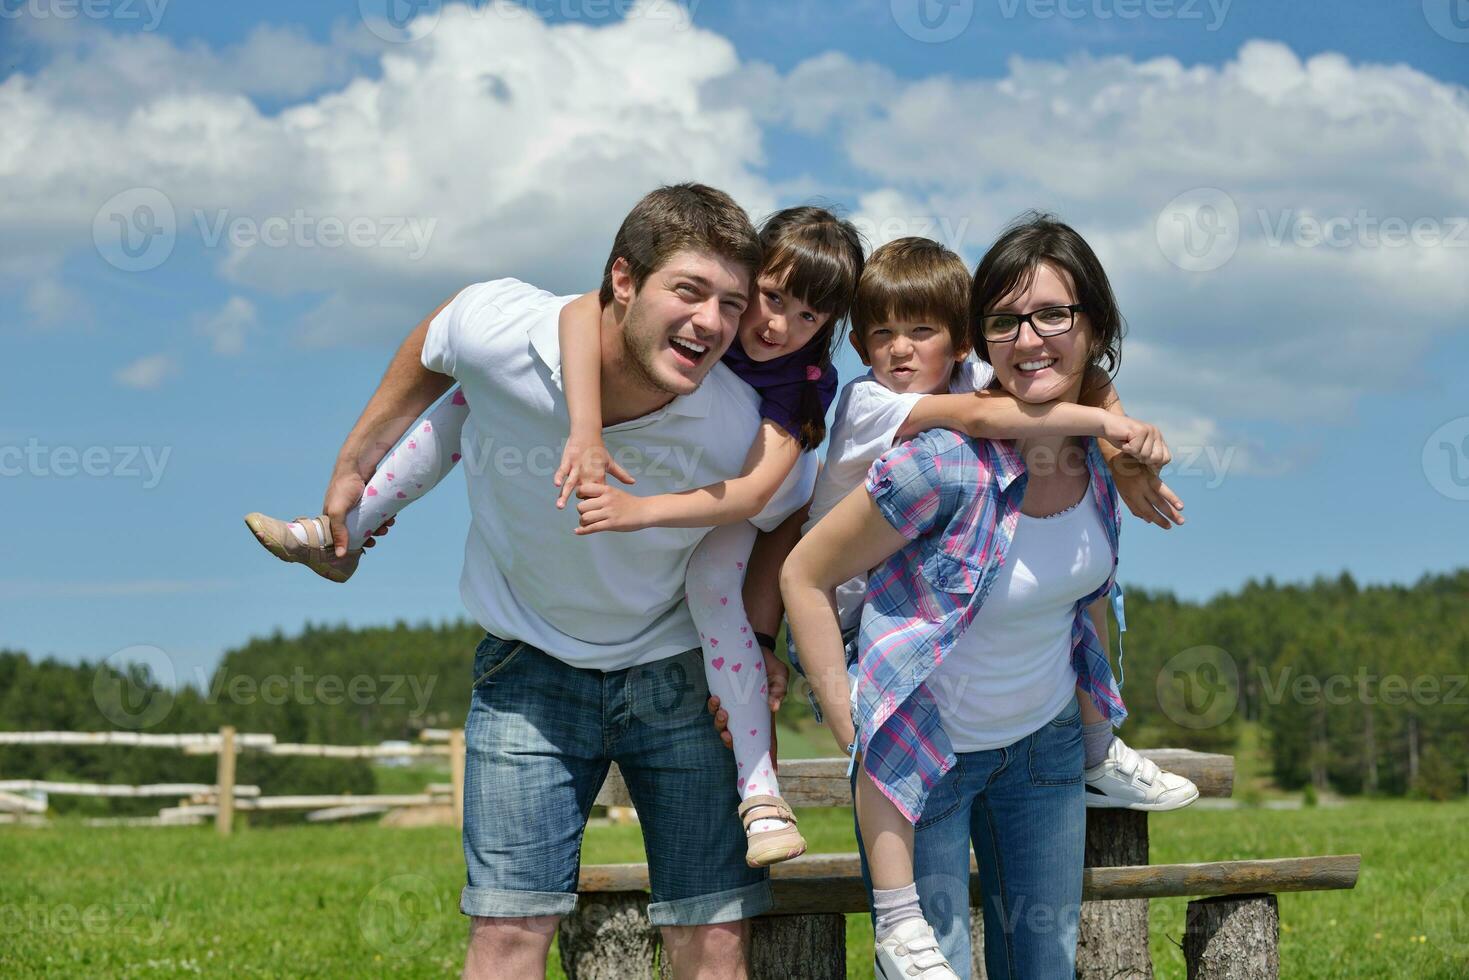 feliz jovem família se divertir ao ar livre foto